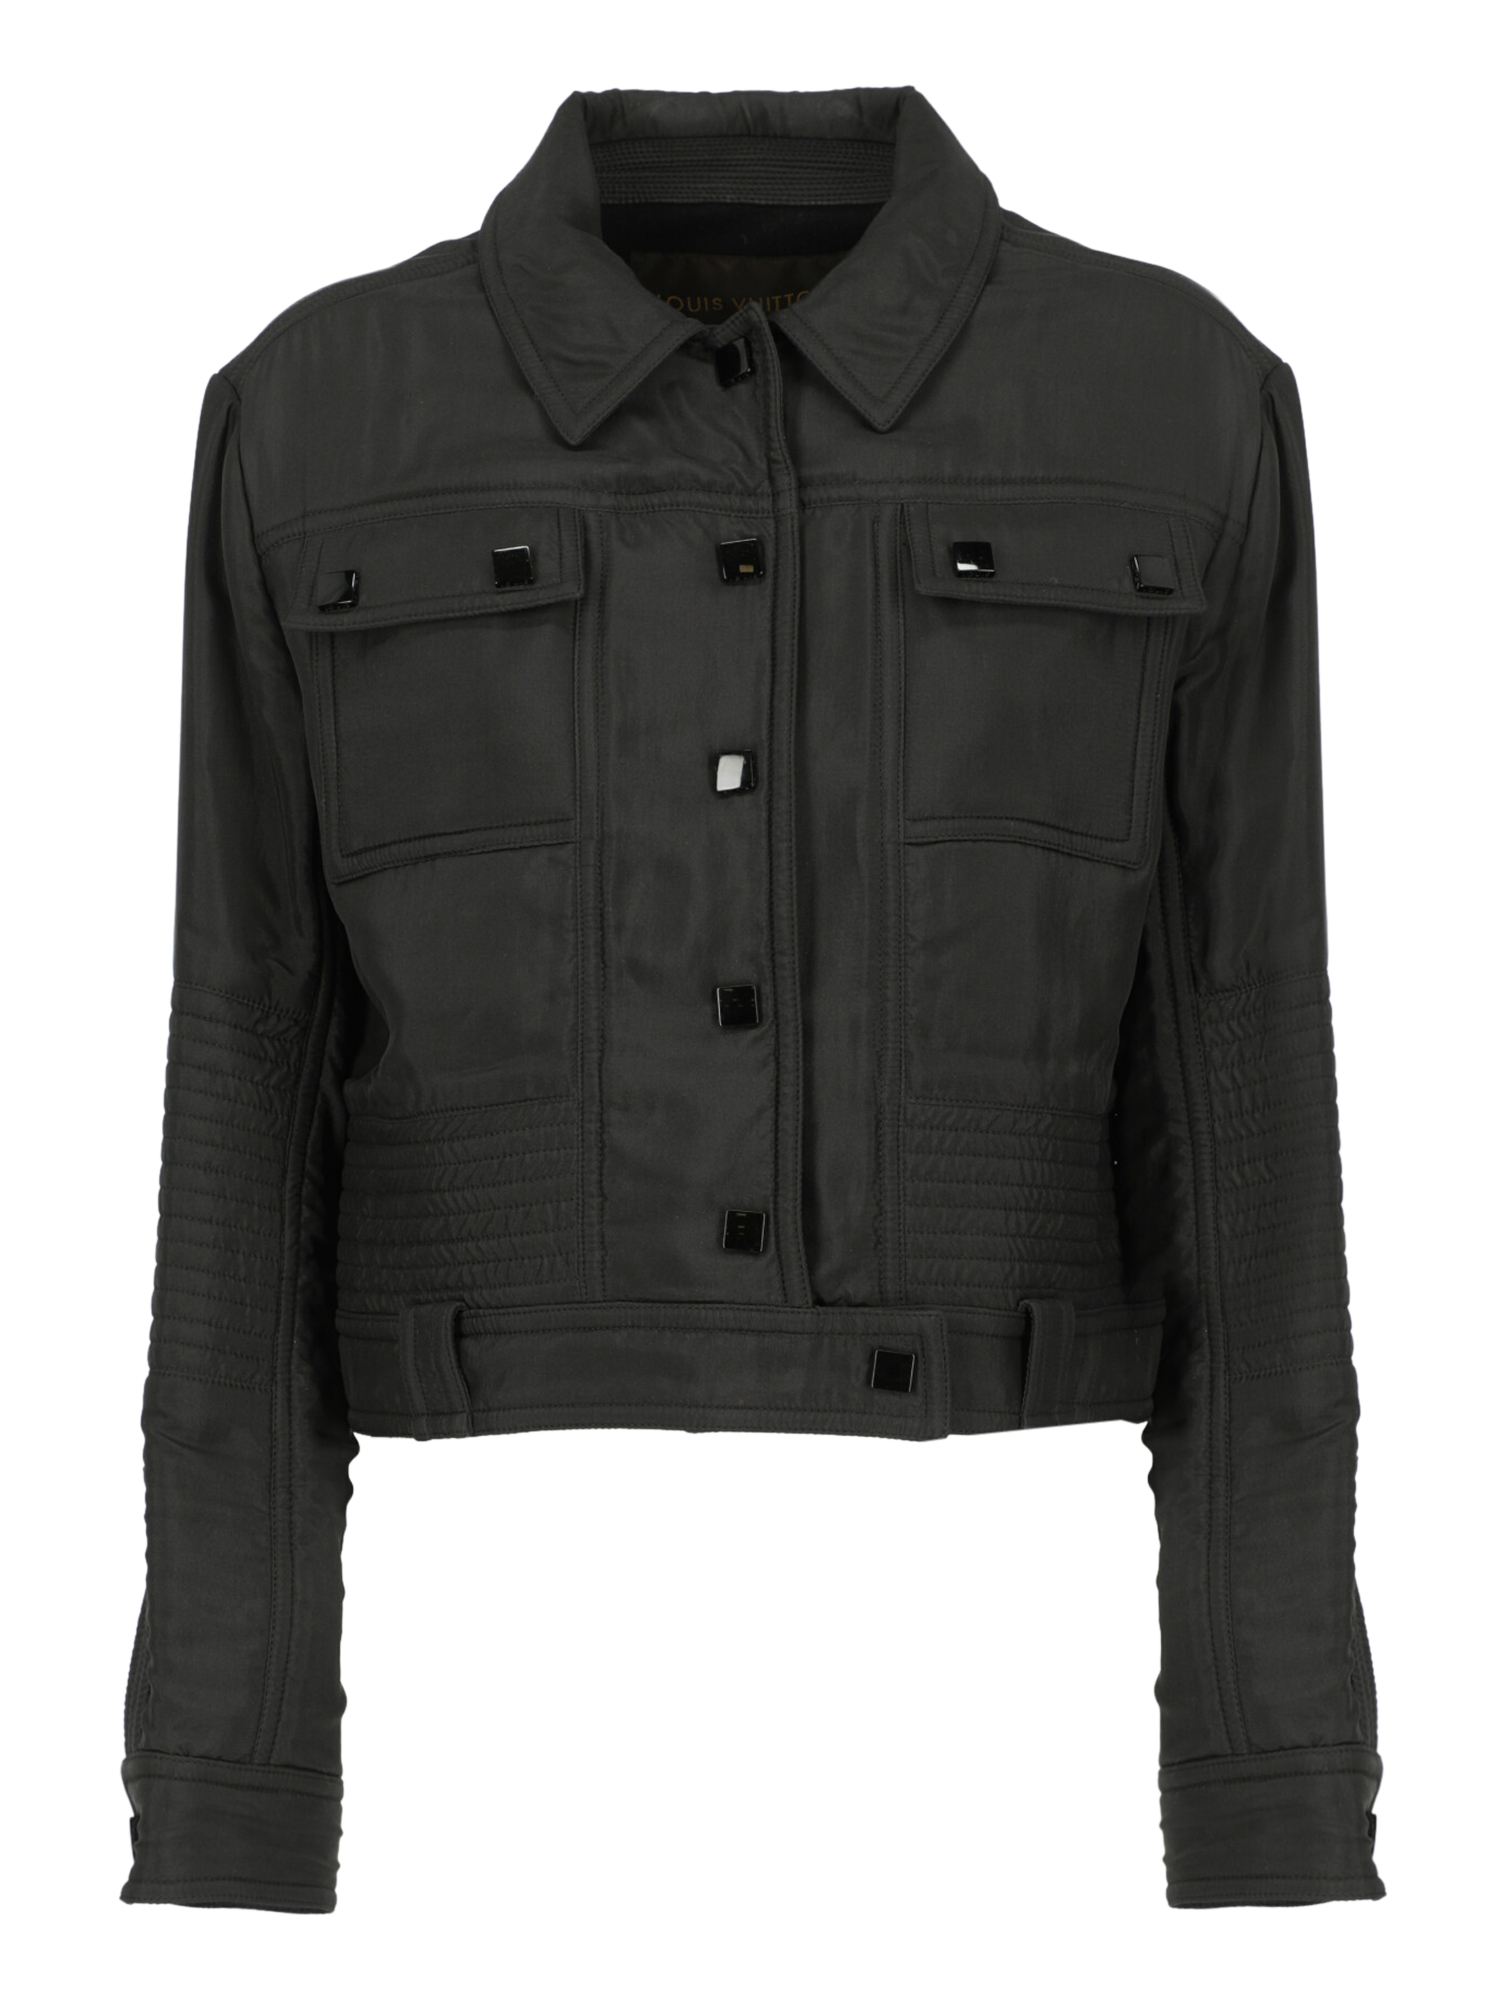 Louis Vuitton femme vestes black fabric